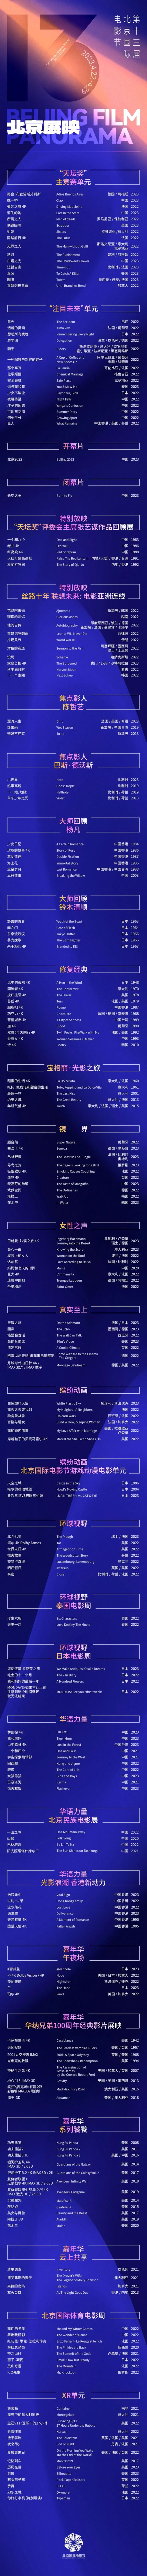 第十三届北京国际电影节“北京展映”完整片单公布